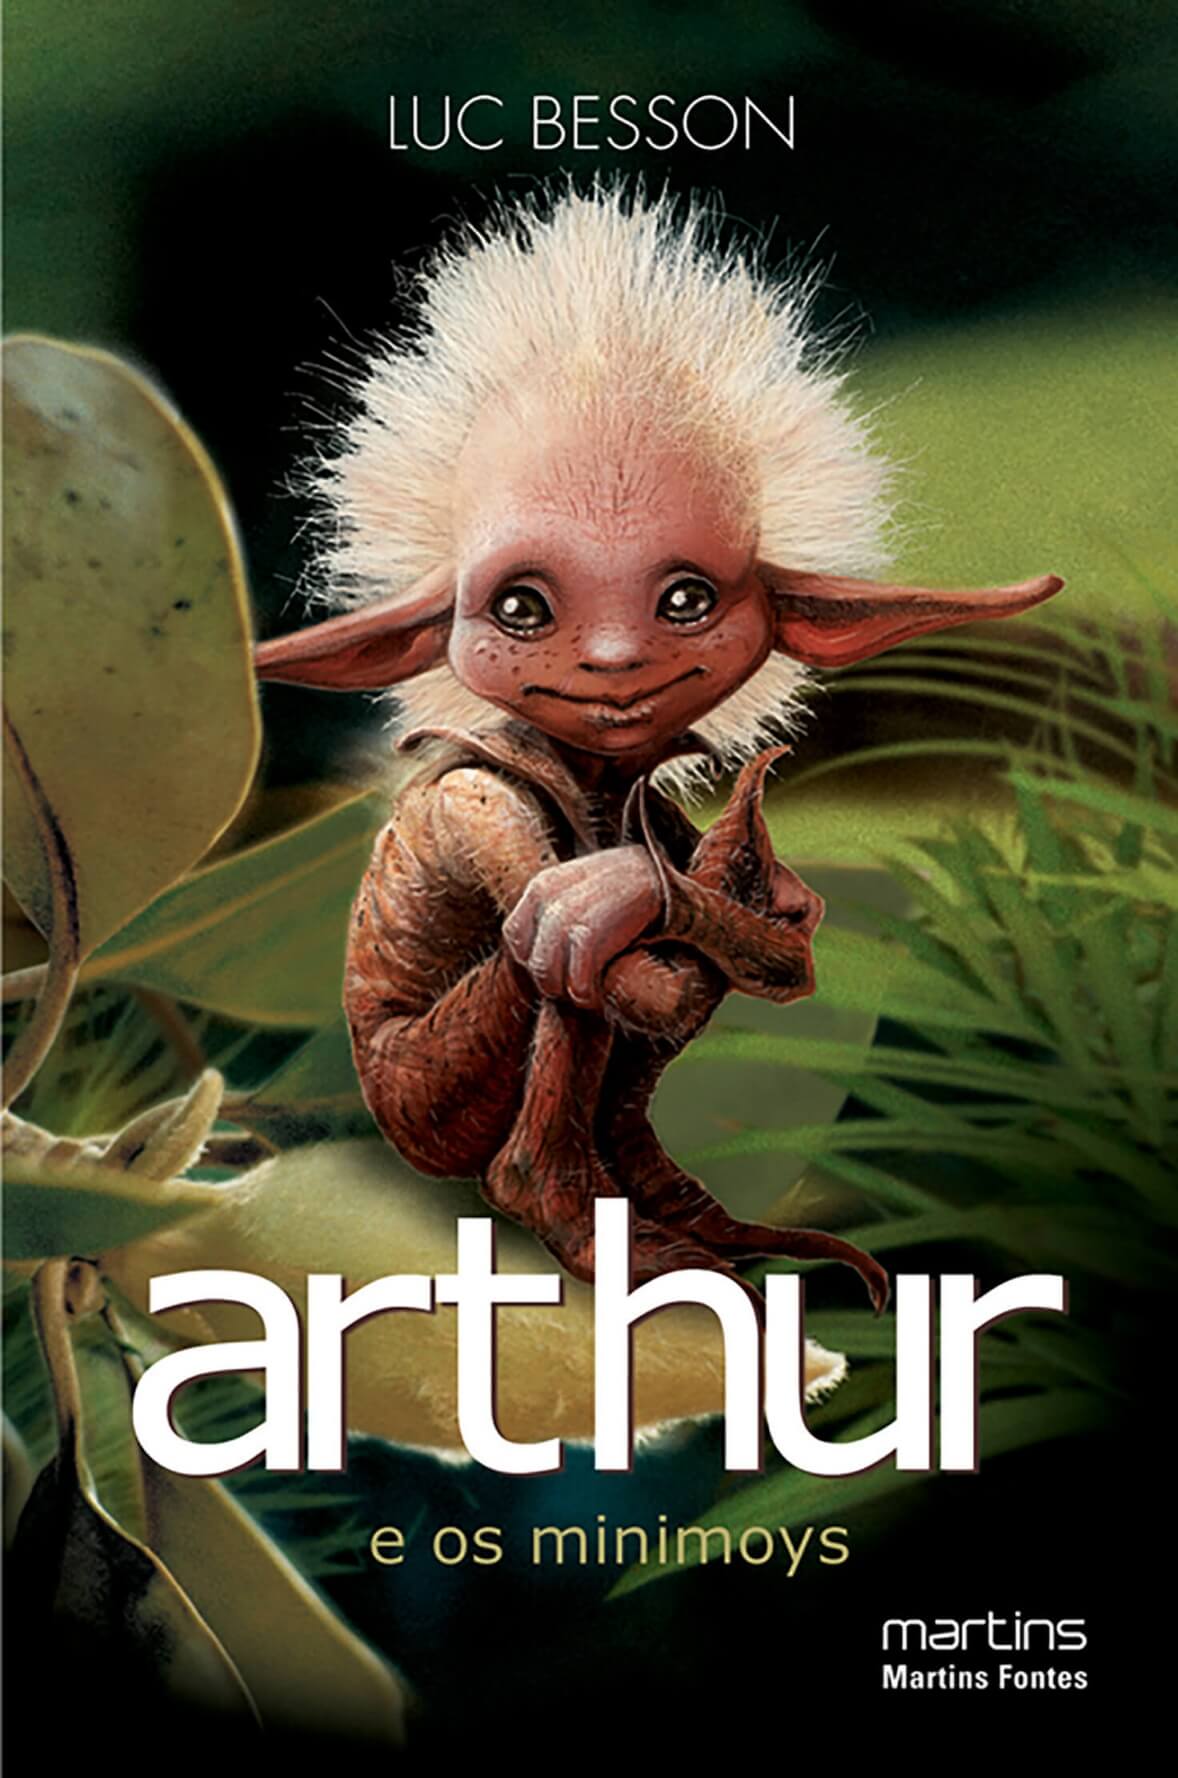 Arthur - Caixa vol.1 e 2  - Martins Fontes